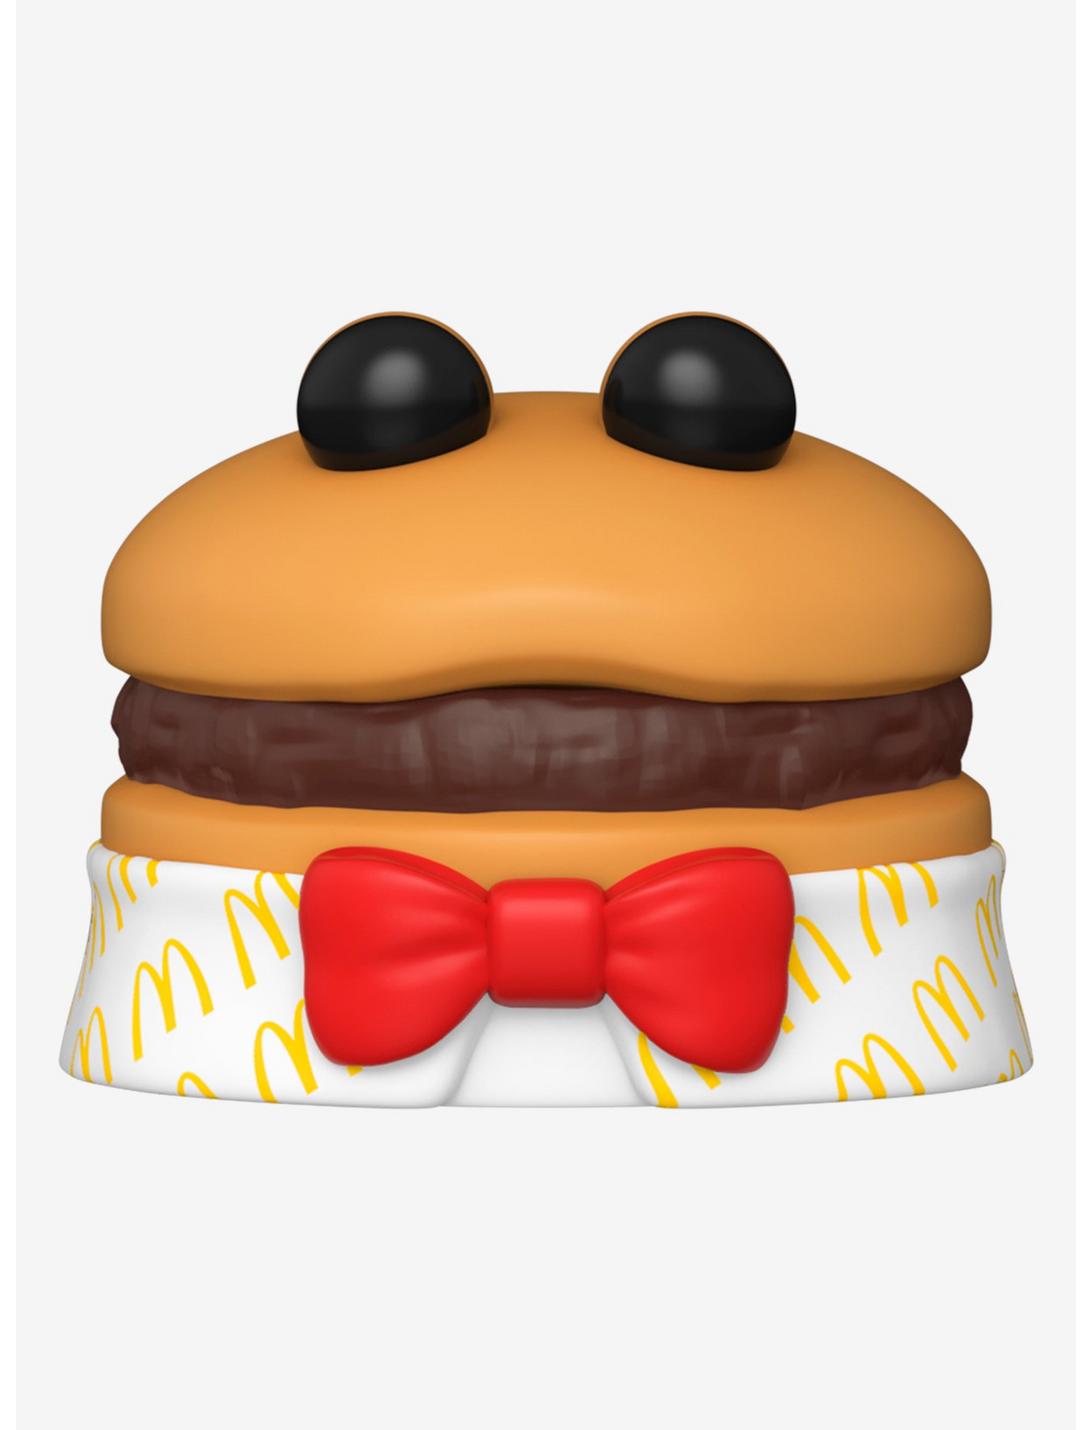 Funko Pop! Ad Icons McDonald's Meal Squad Hamburger Vinyl Figure, , hi-res